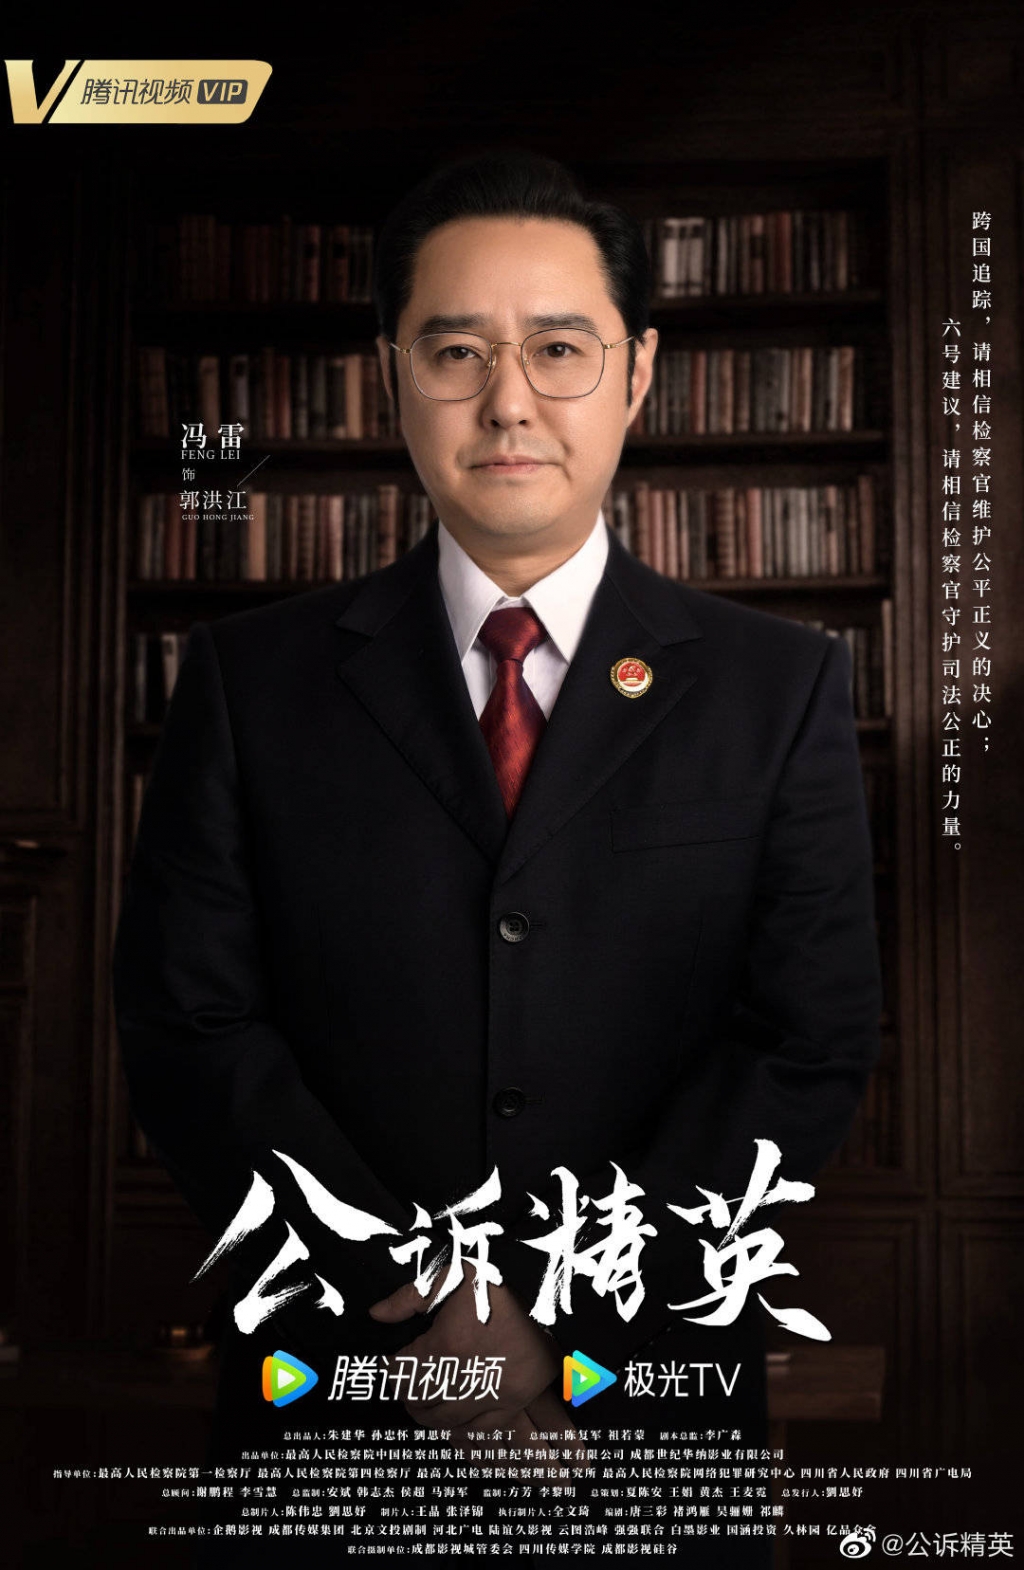 'Công tố tinh anh' tung poster chính thức giới thiệu nhân vật, Địch Lệ Nhiệt Ba khí chất ngời ngợi